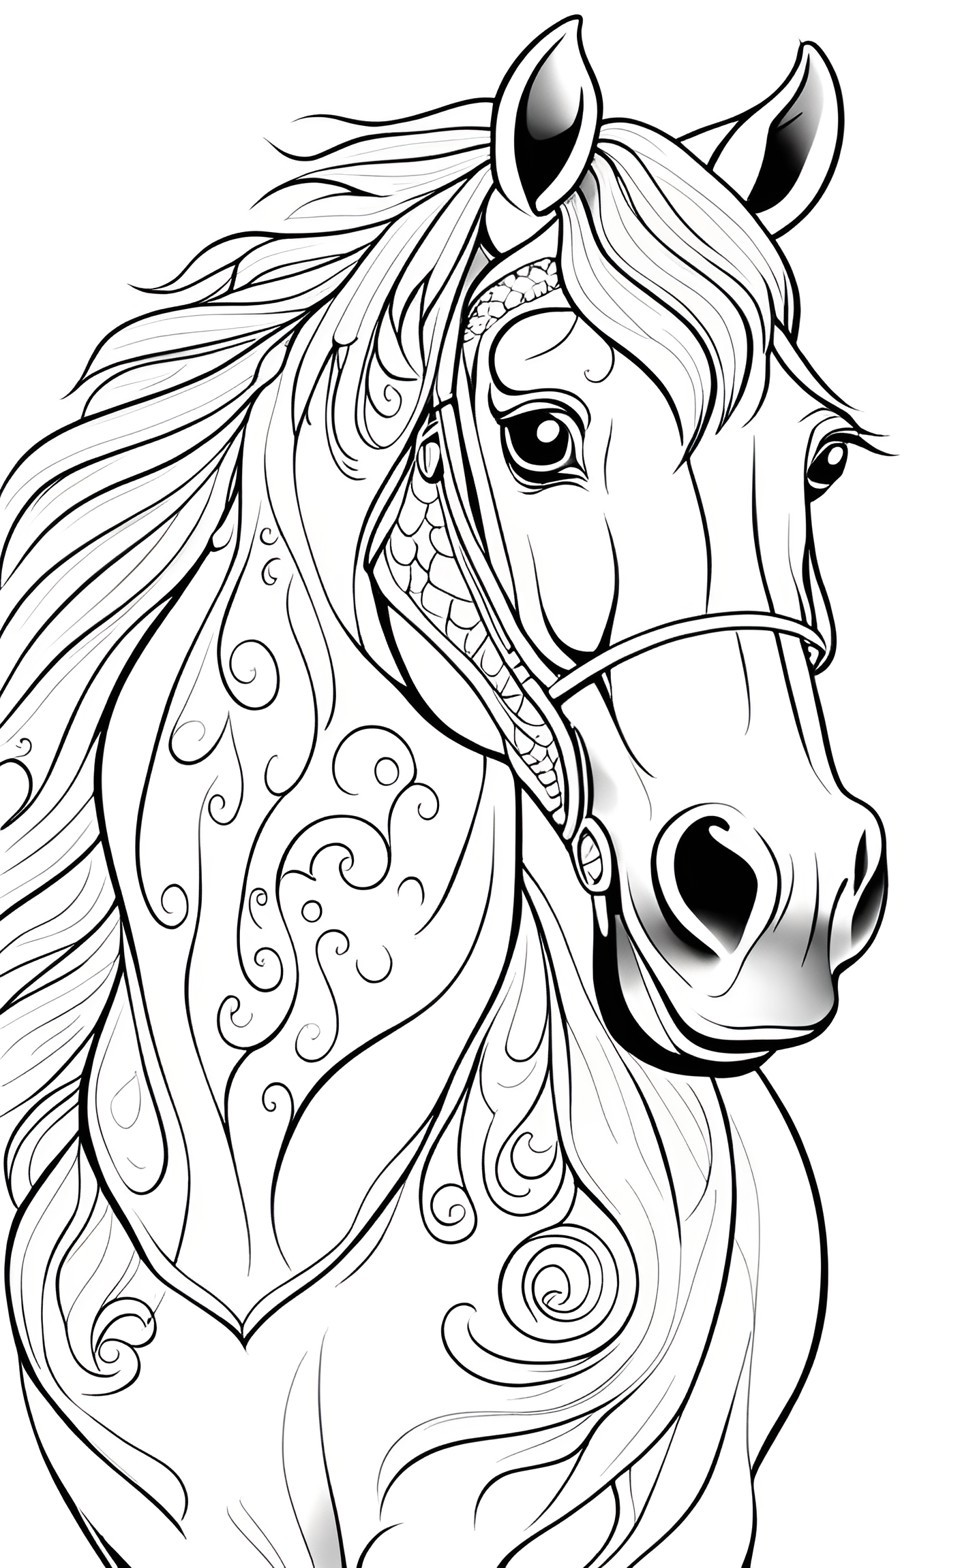 Horse Coloring Pages | At Boyama Sayfaları